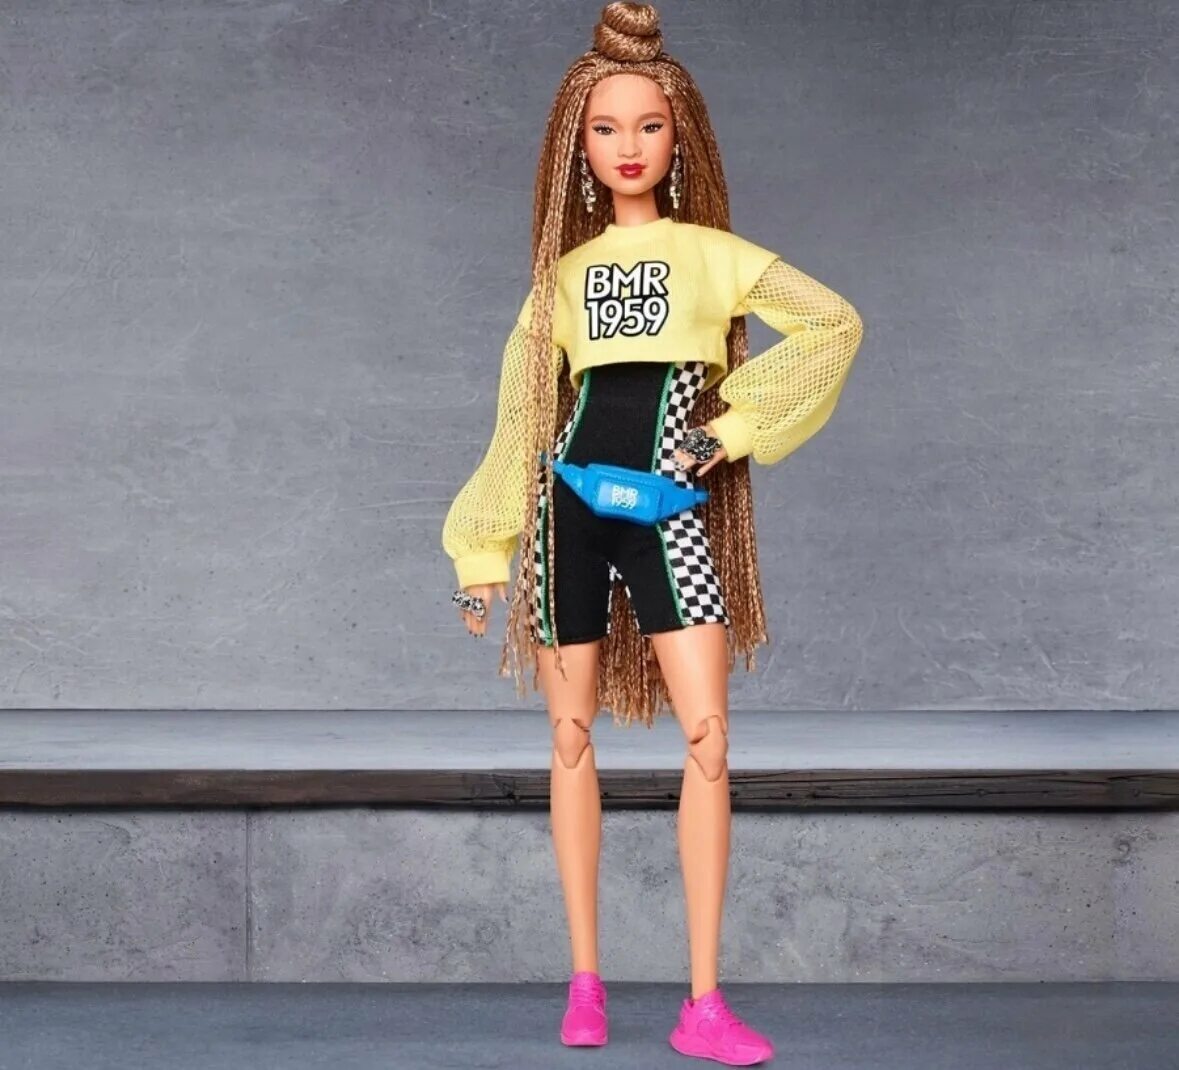 Кукла какие сейчас. Кукла Барби BMR 1959. Кукла Barbie коллекционная bmr1959. Кукла Барби bmr1959 Латиноамериканка. Кукла Барби bmr1959 ght91.